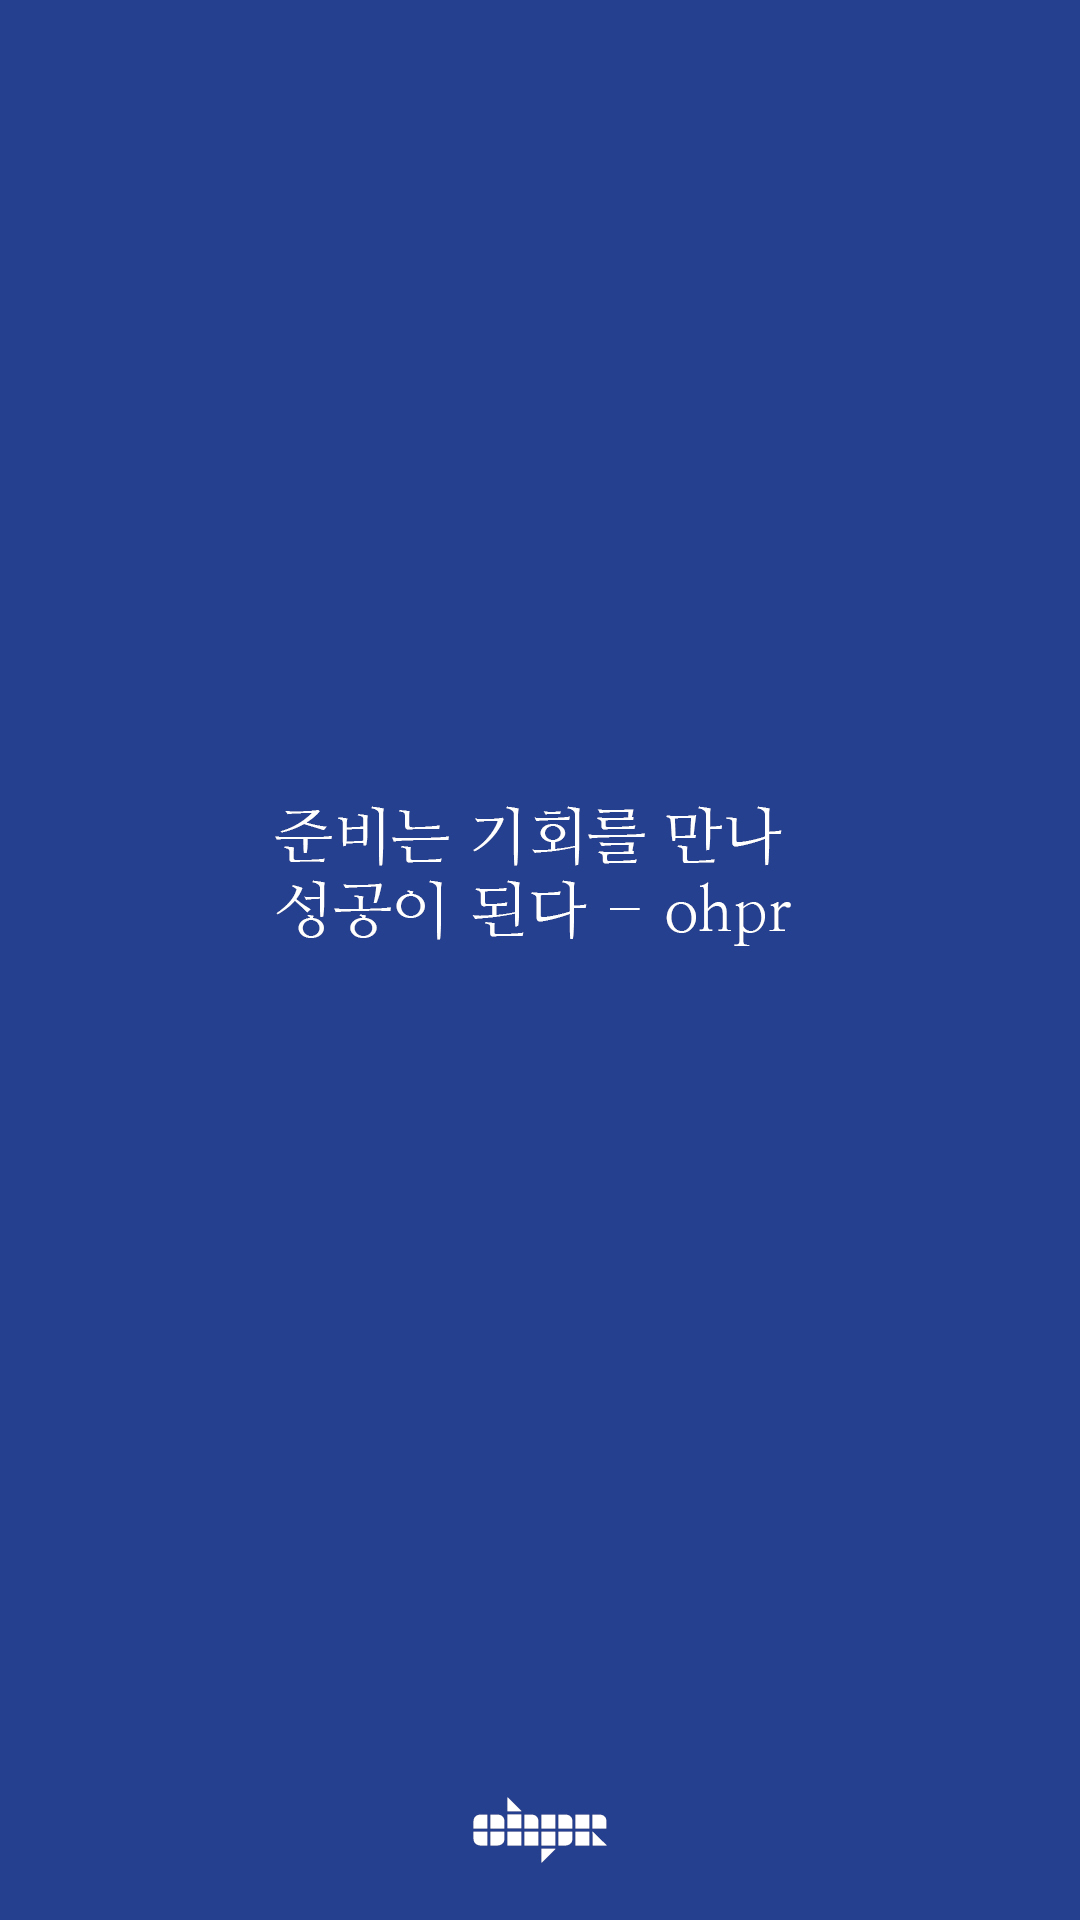 ohpr_wording32